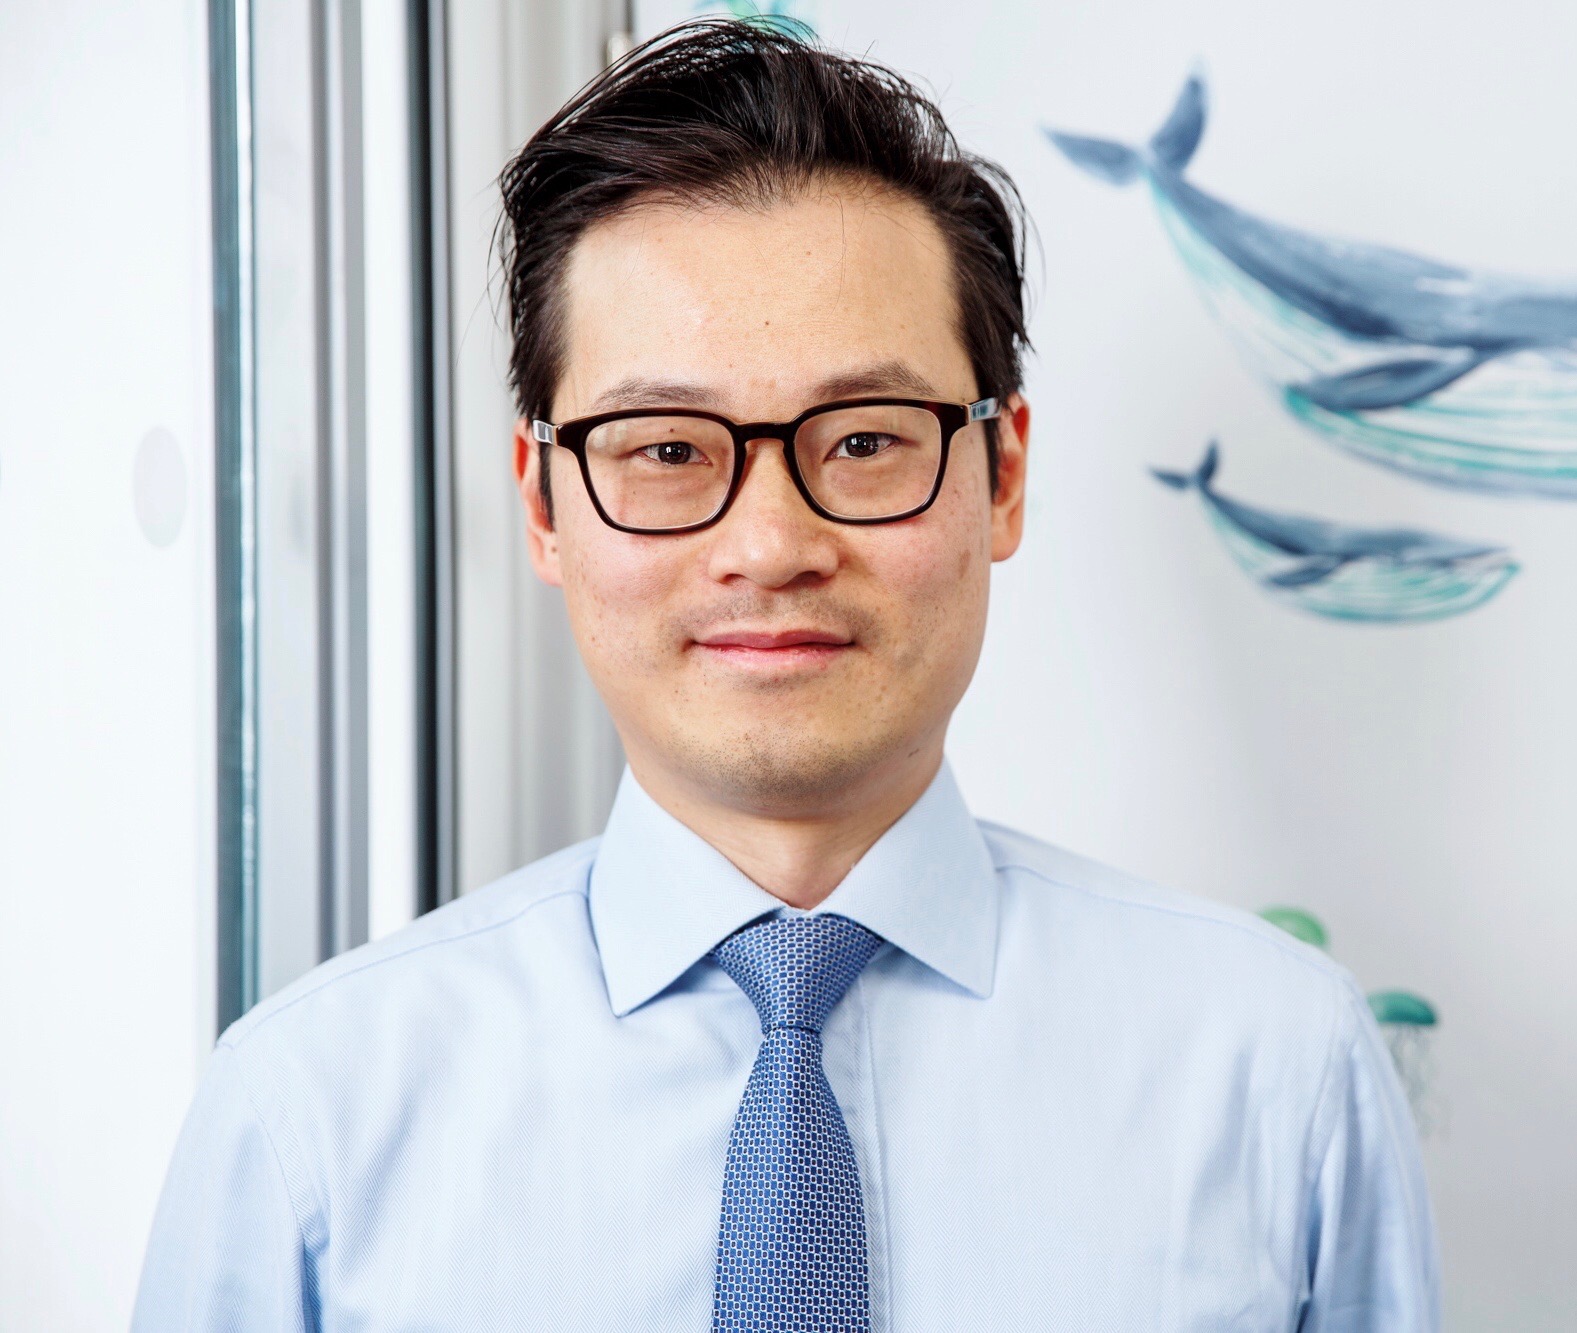 Stephen Yiu of Blue Whale Capital LLP